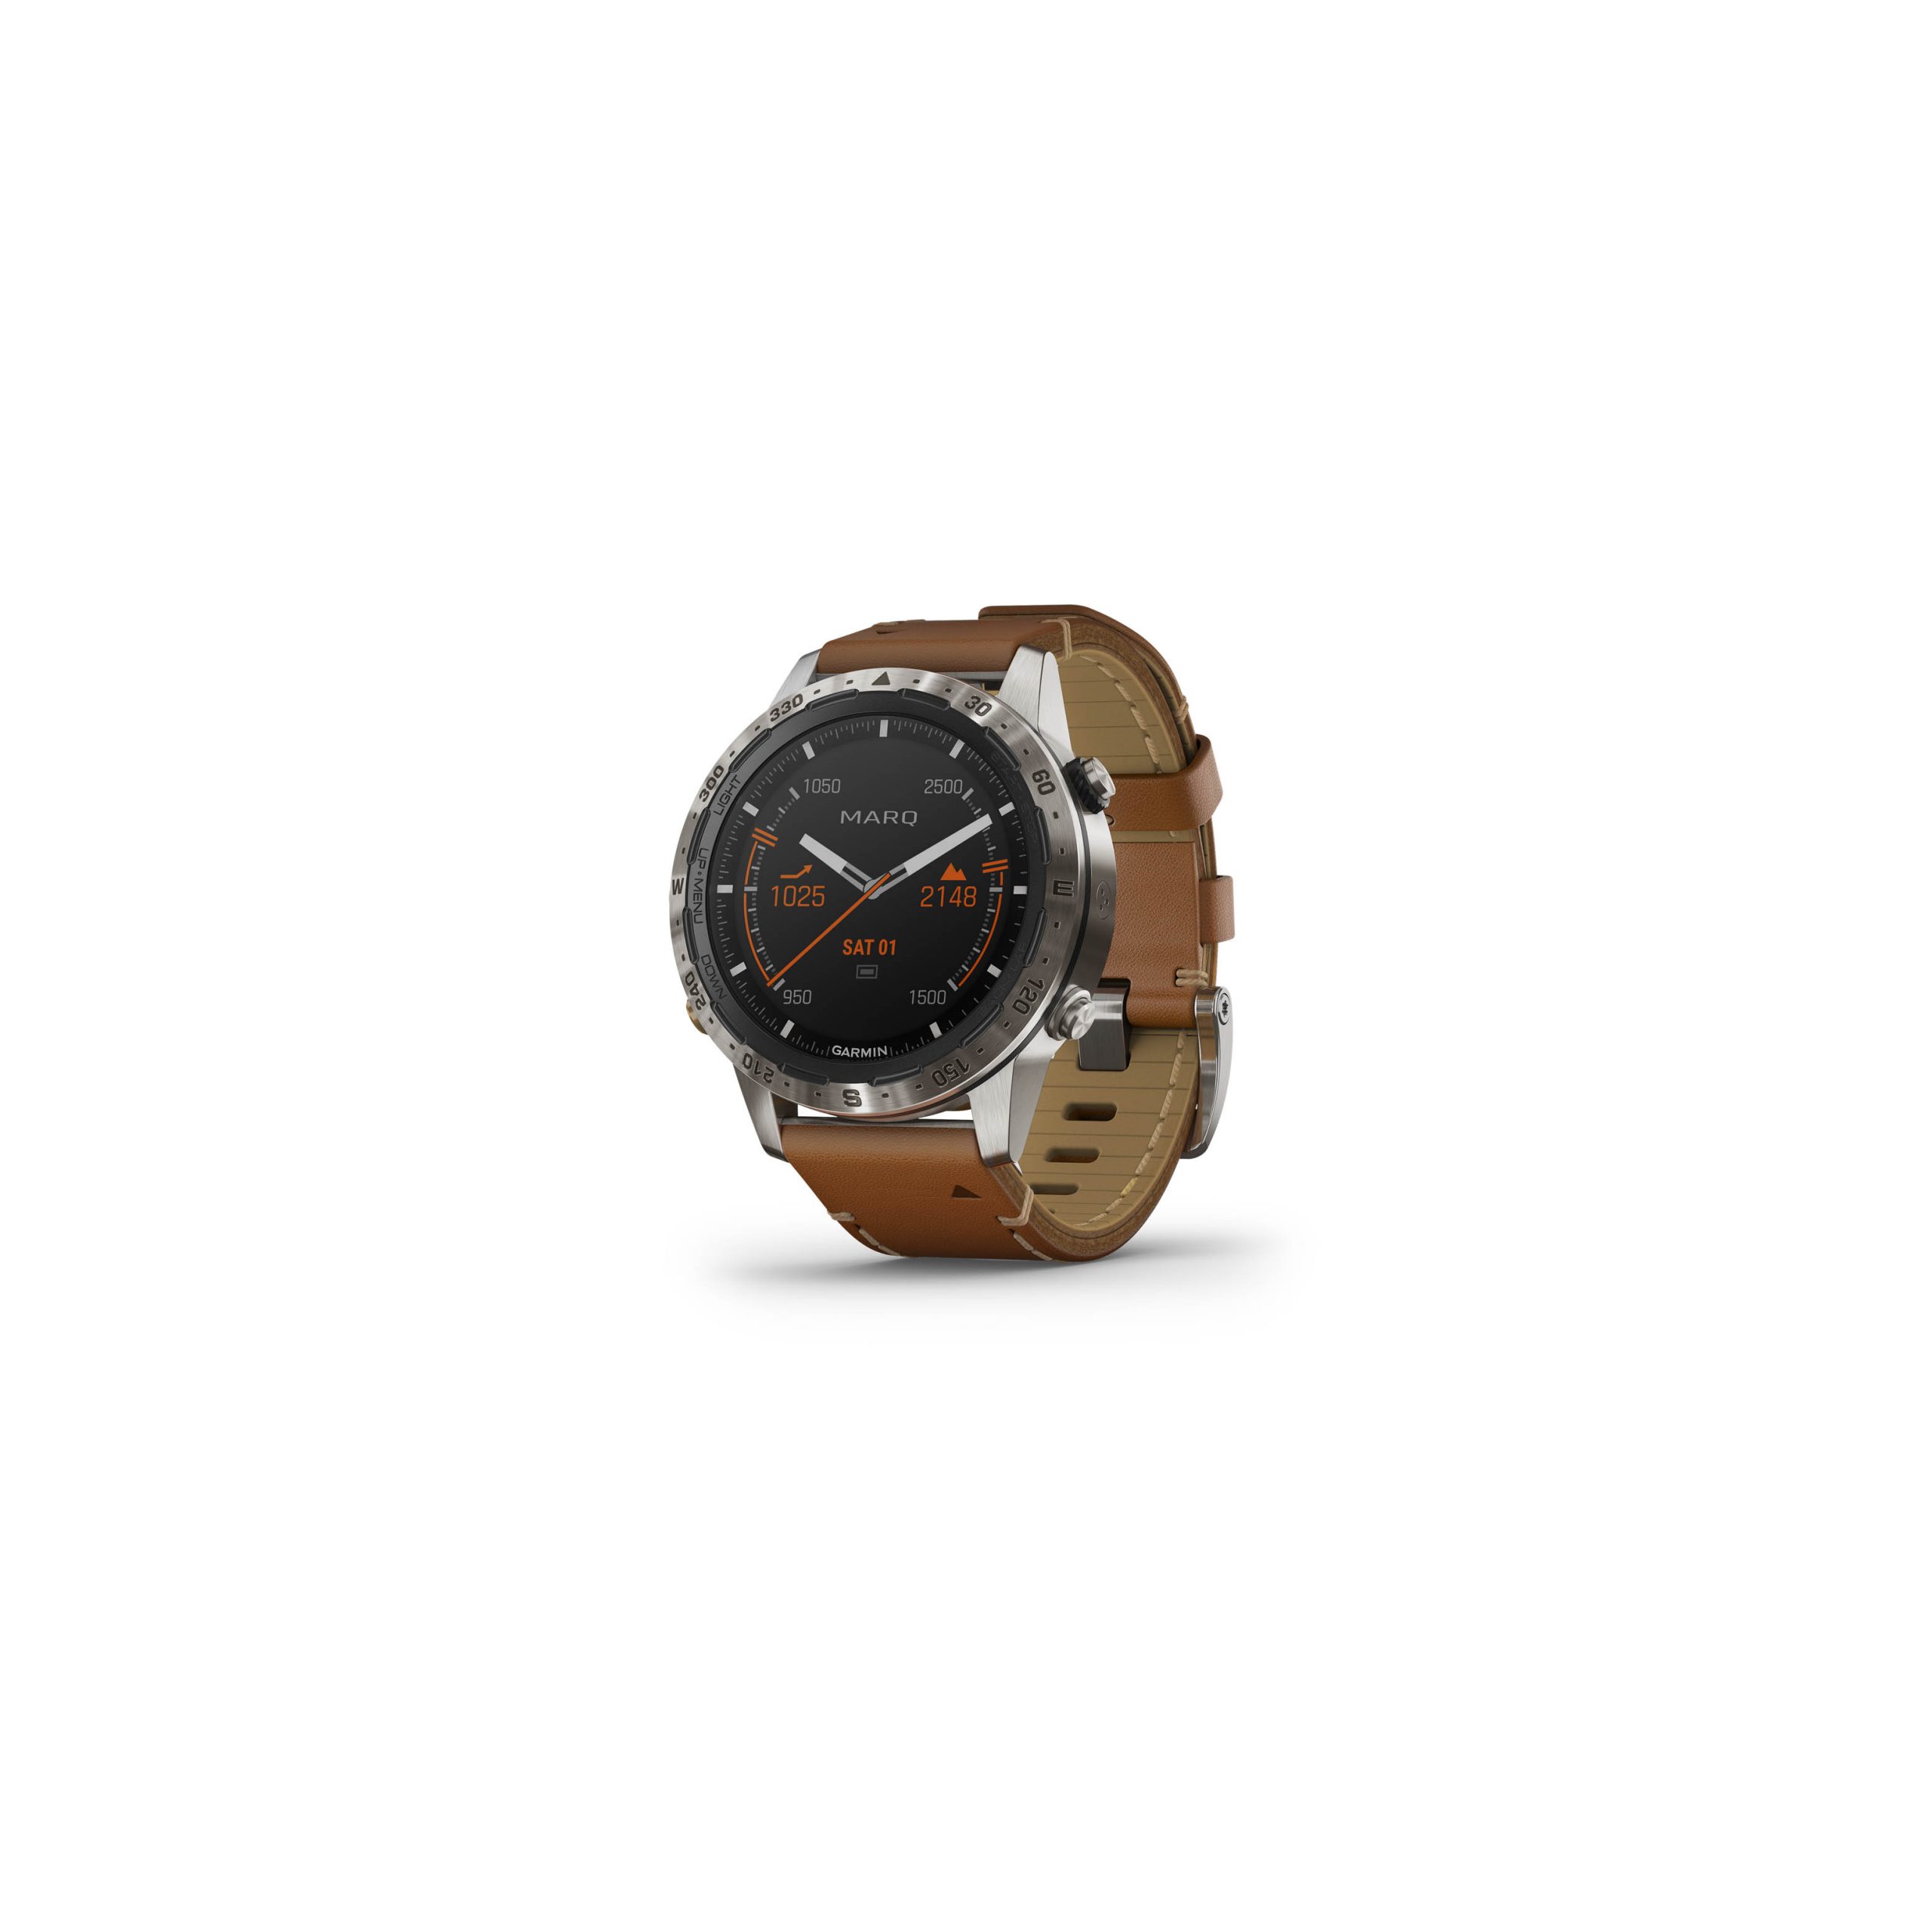 MARQ-Adventurer titanium smartwatch